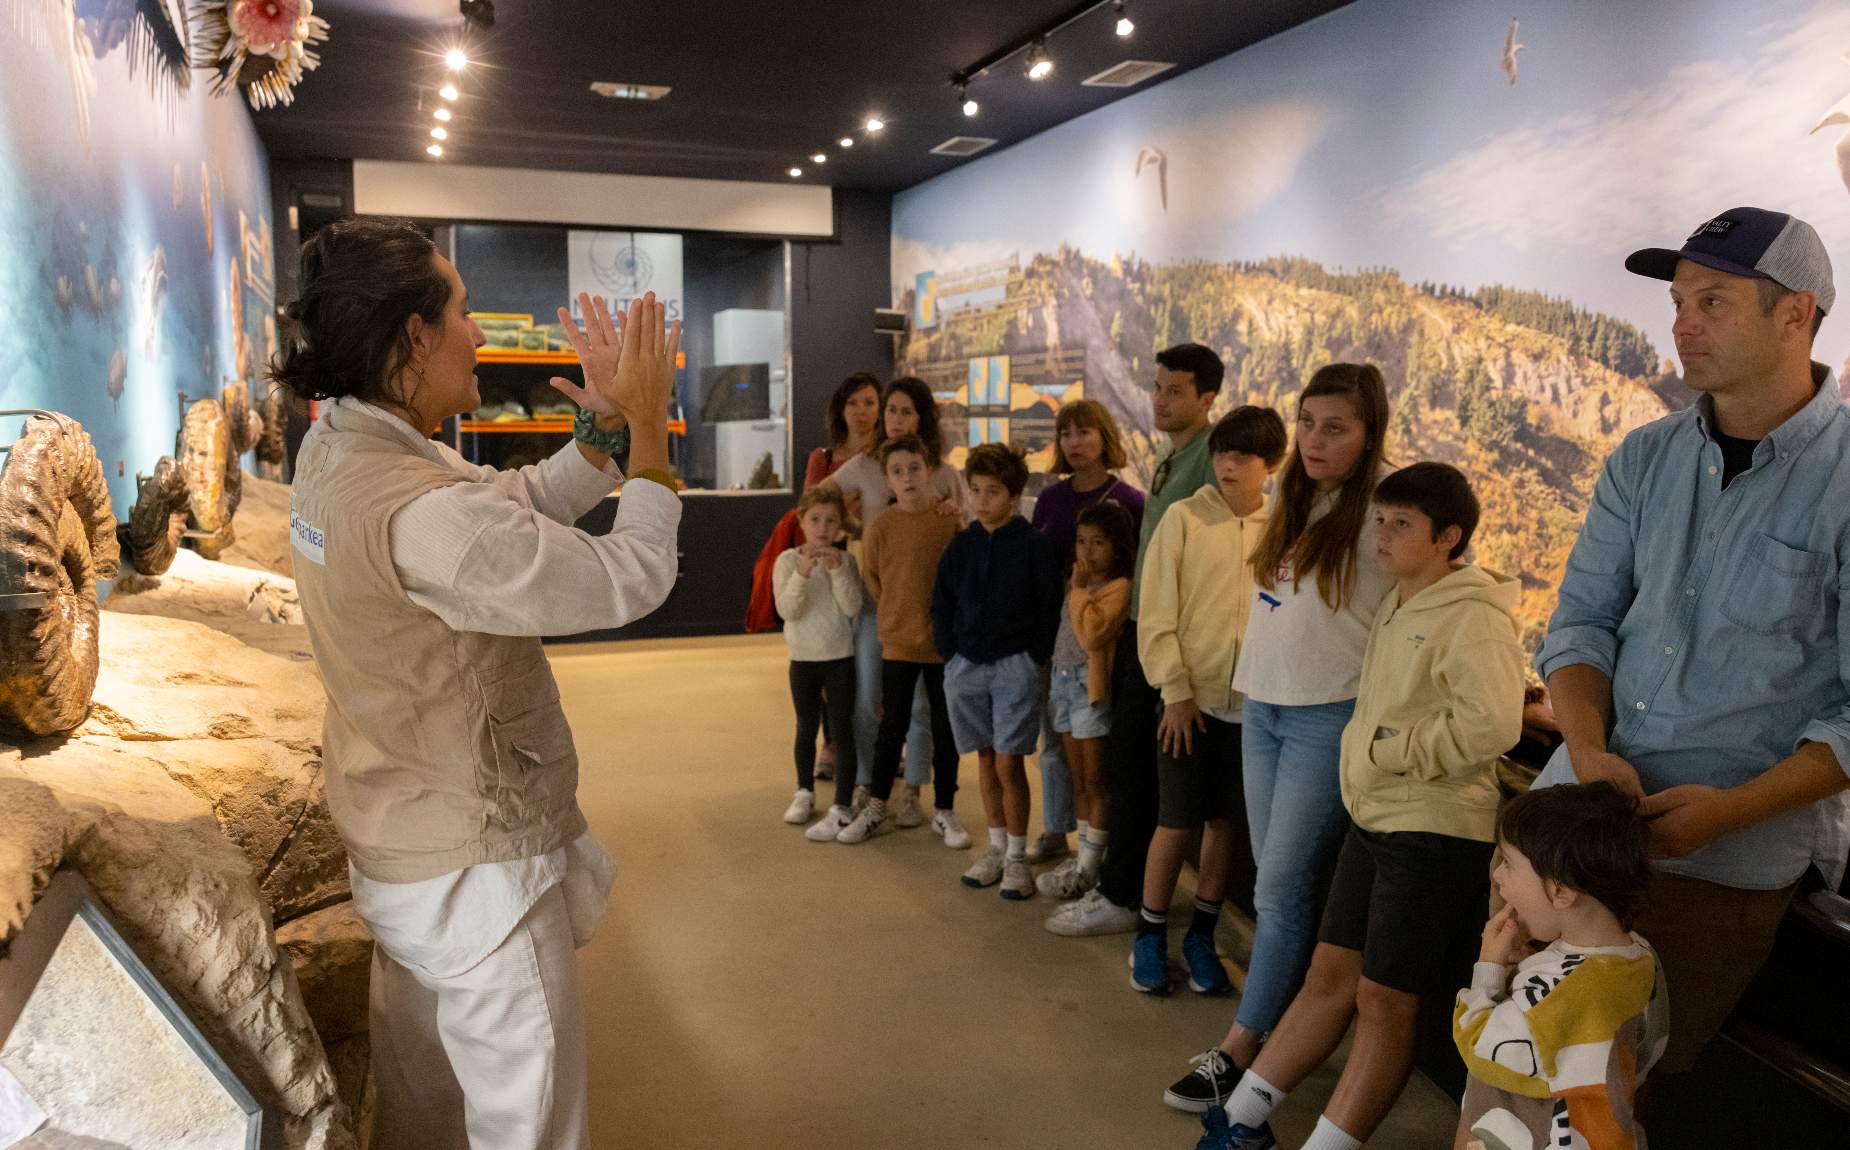  Guia explicando fosiles en el museo a varias personas